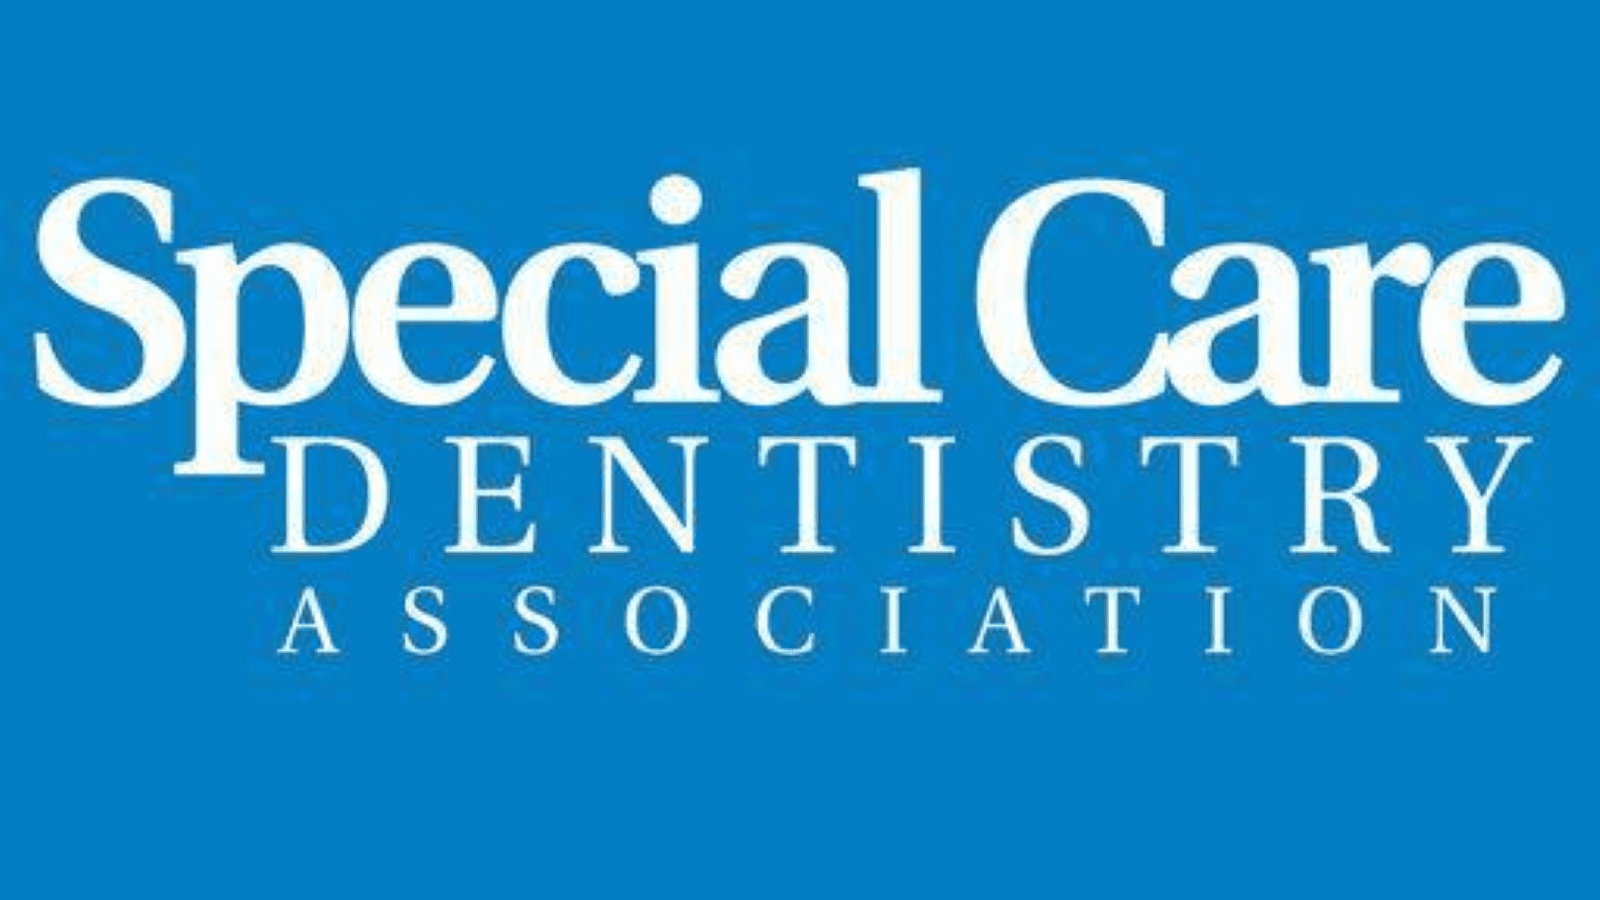 Special care dentistry association